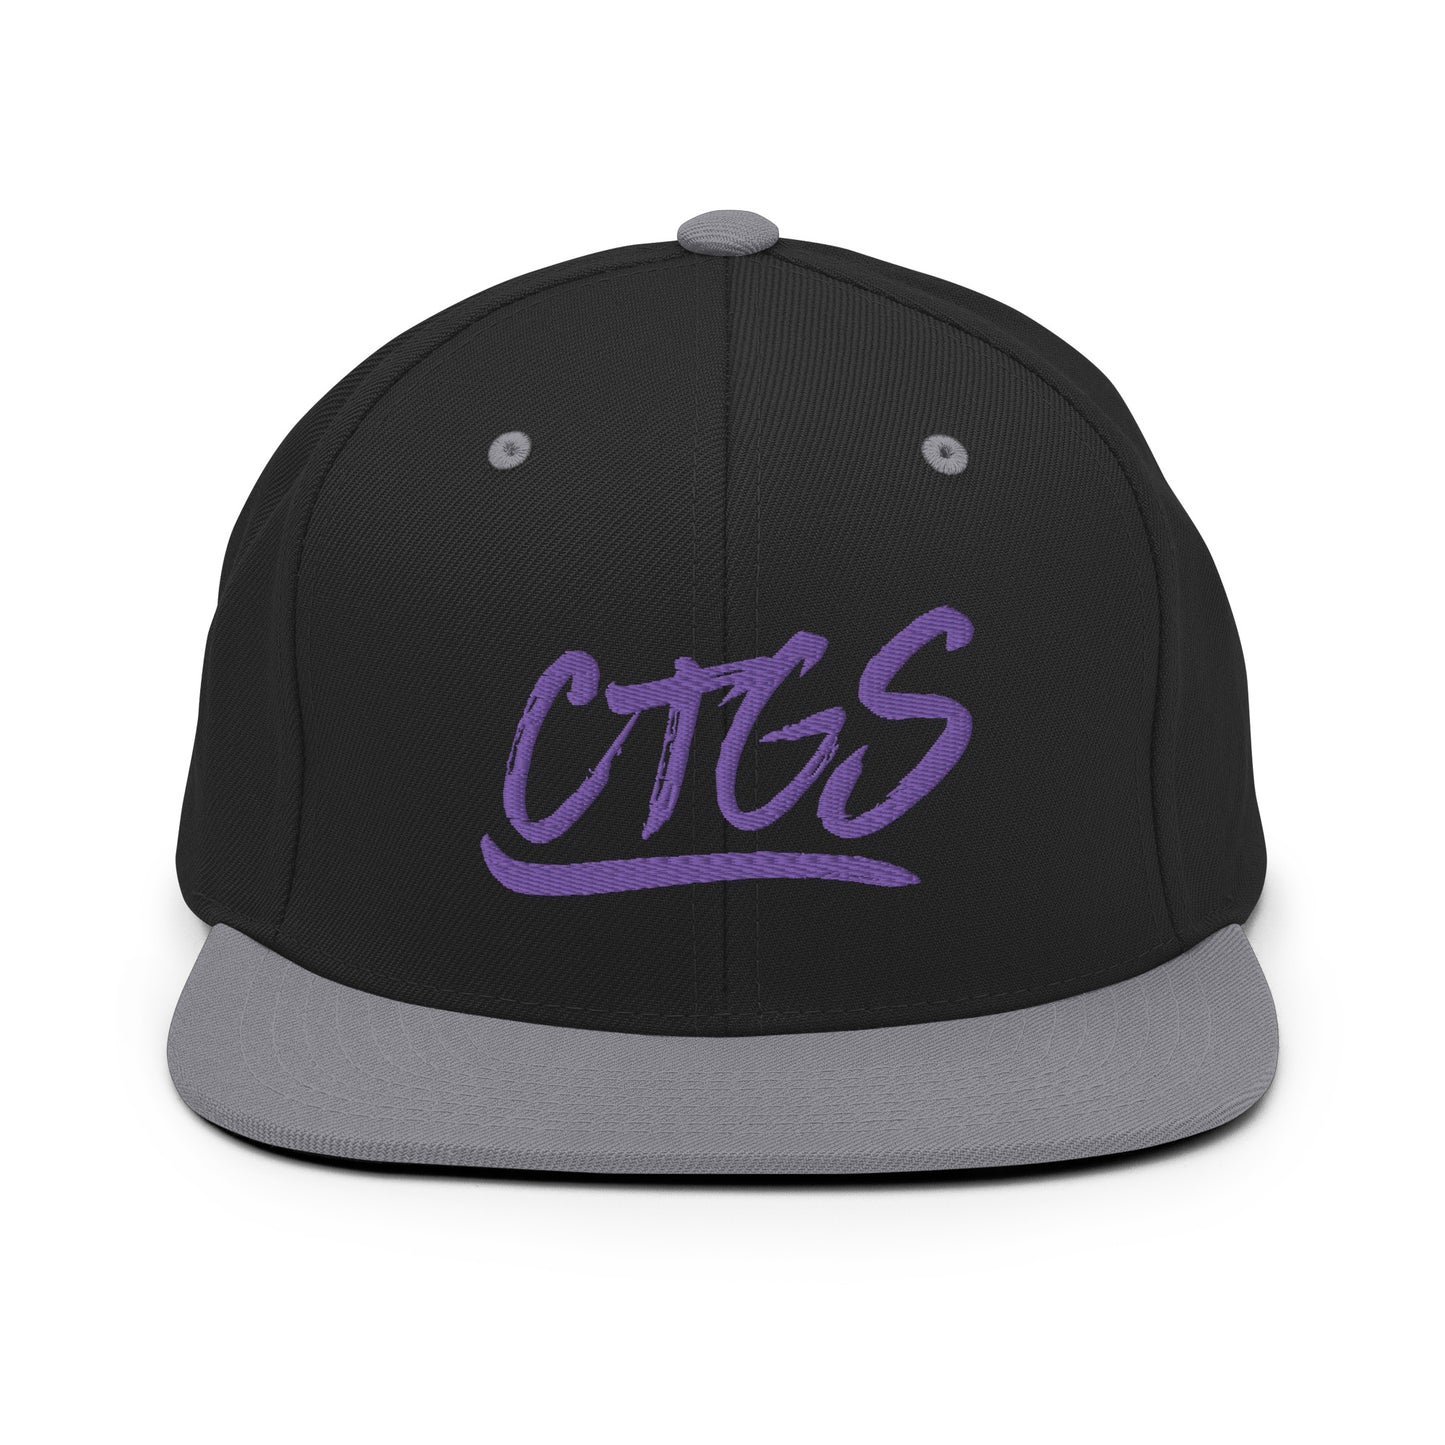 CTGS Snapback Hat